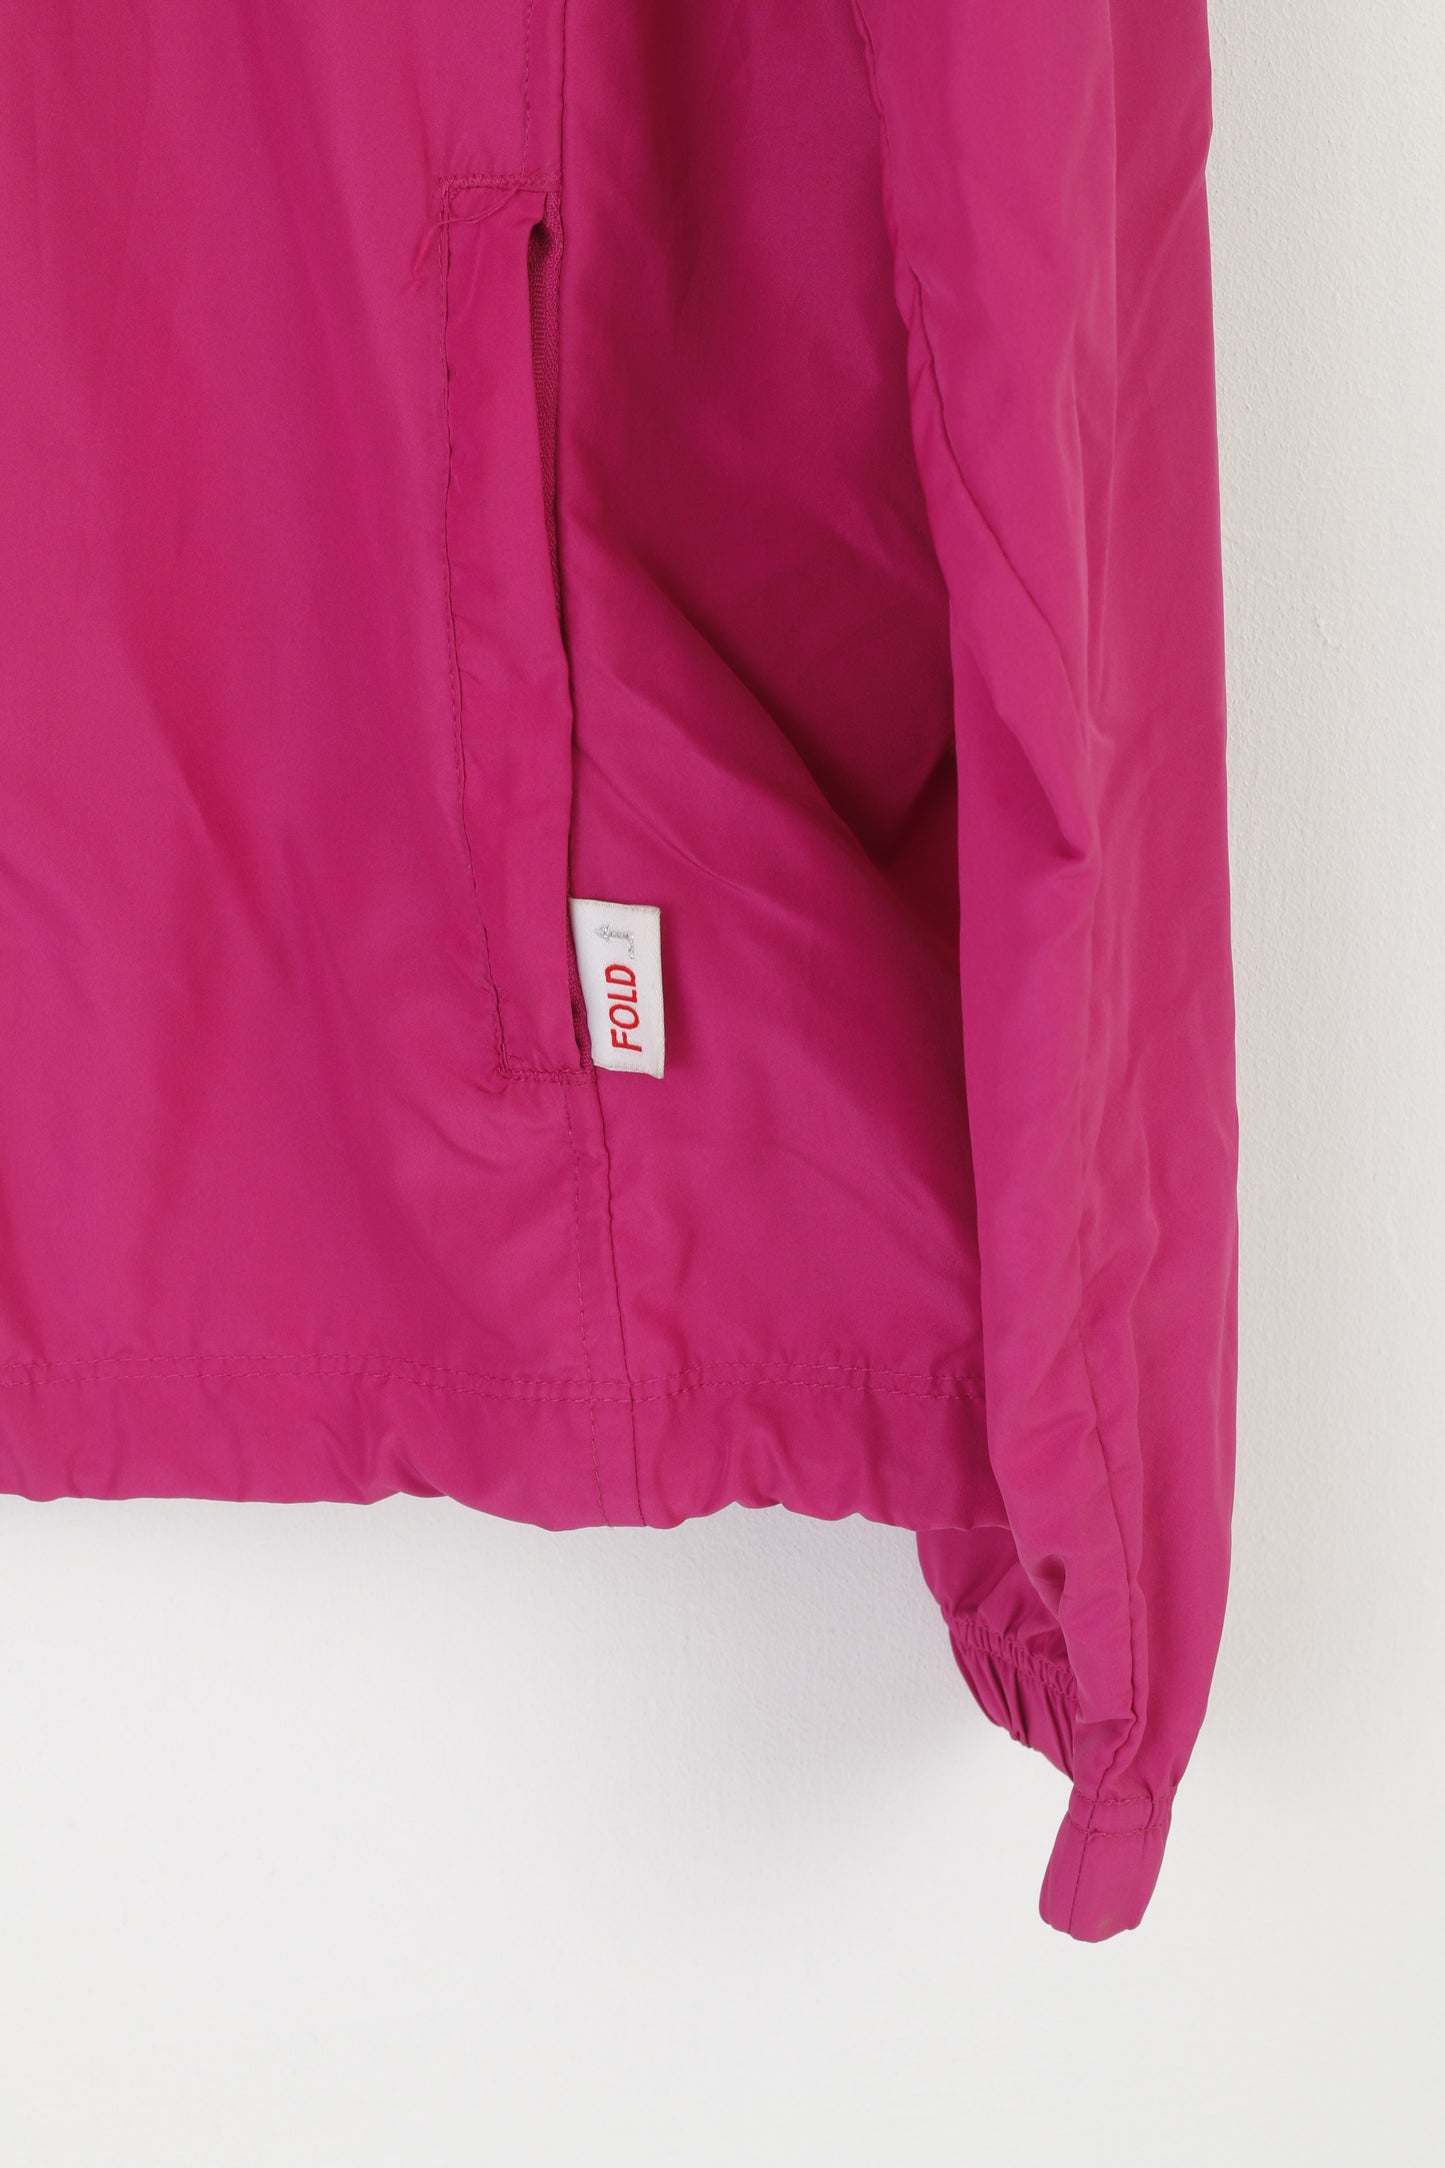 Giacca Champion da donna L, rosa, con cappuccio vintage, giacca a vento, cerniera, top leggero